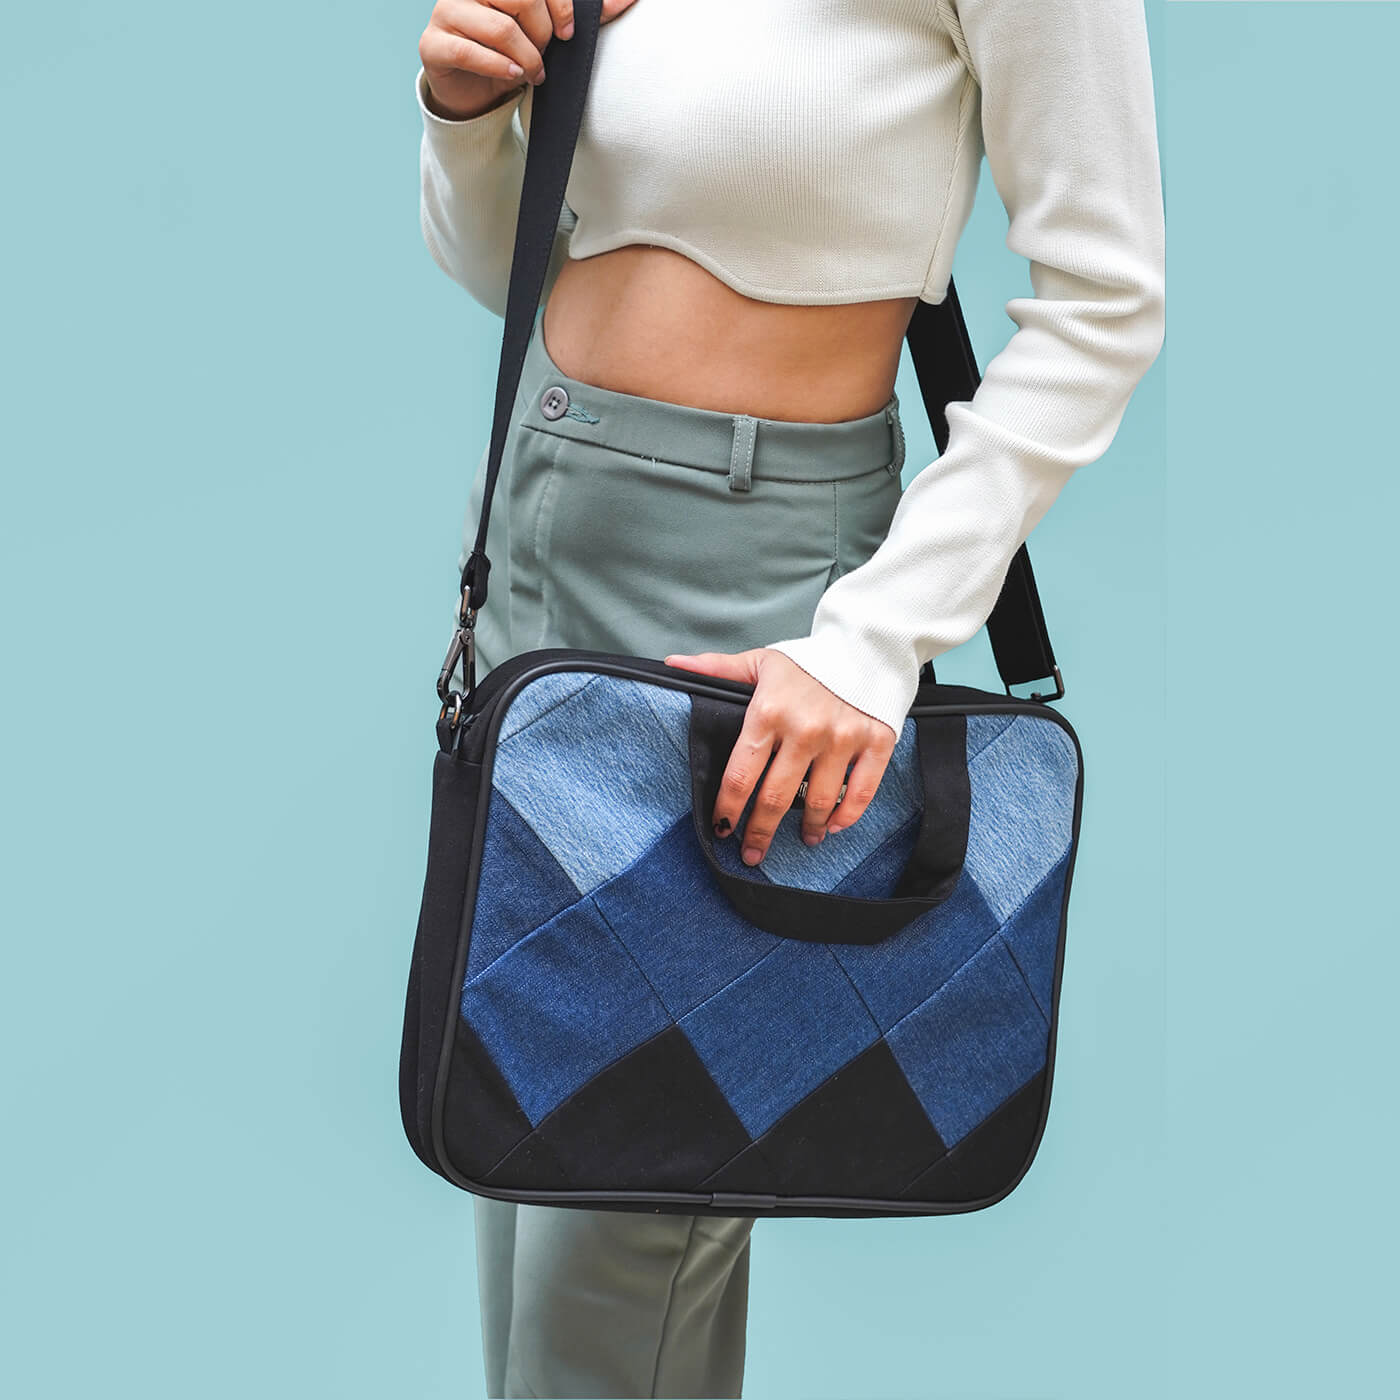 Buy Blue Handcrafted Upcycled Denim Sling Bag Online at Jaypore.com